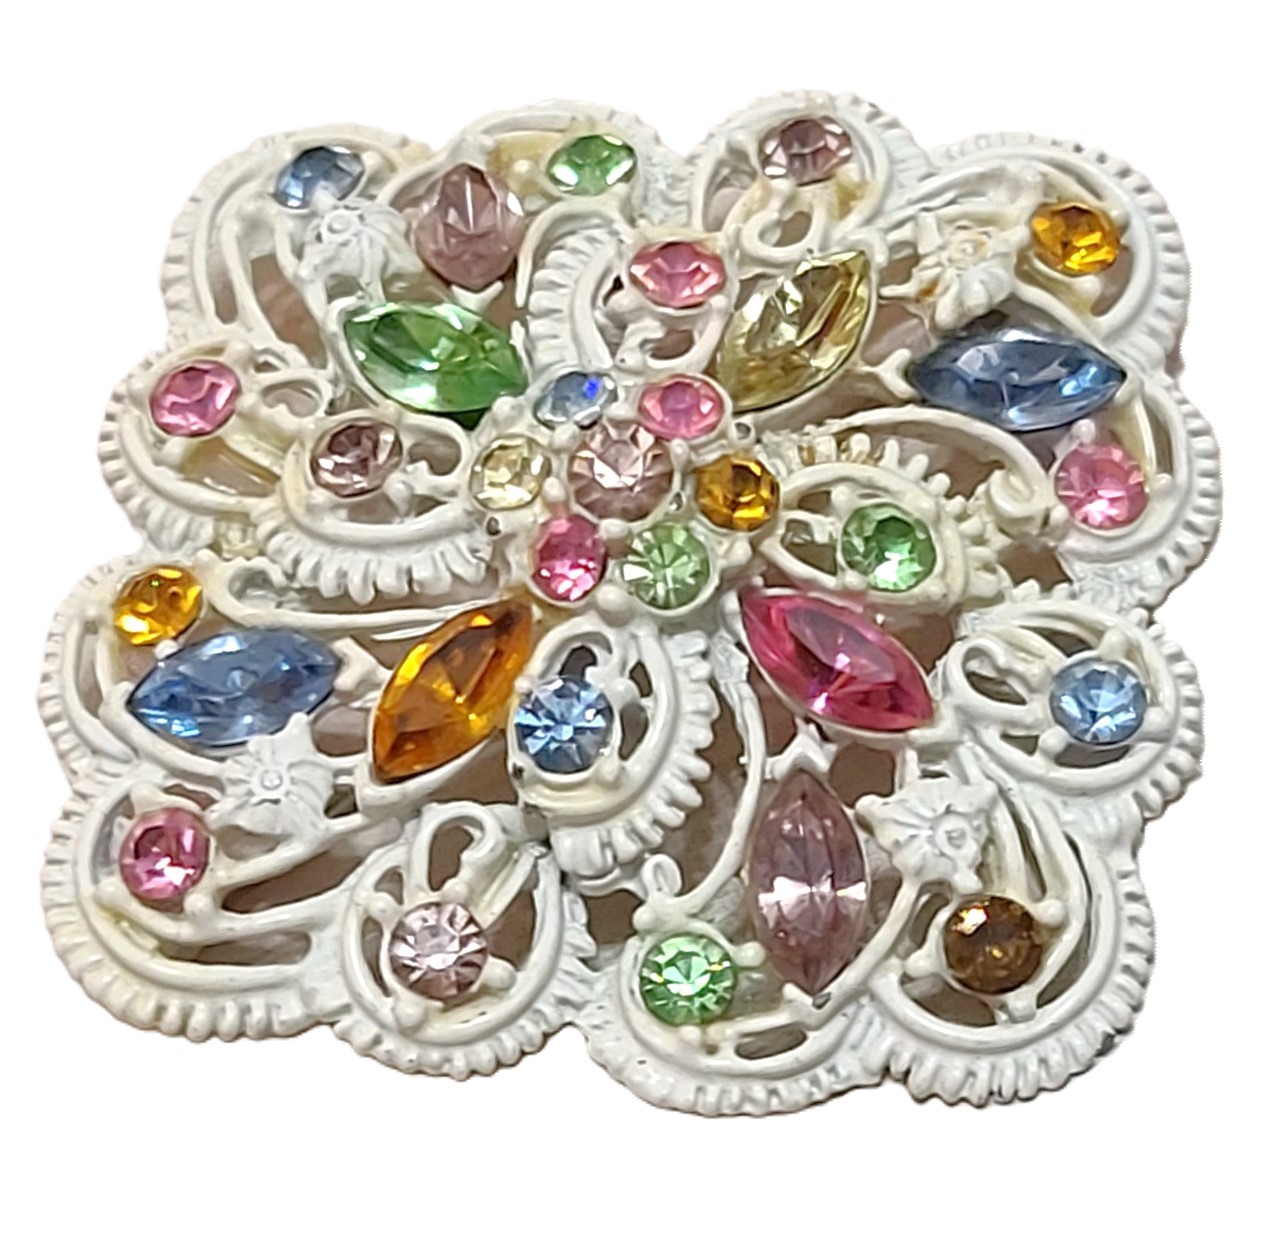 Pastel rhinestone brooch, pin, vintage, white metal with mutli color rhinestones